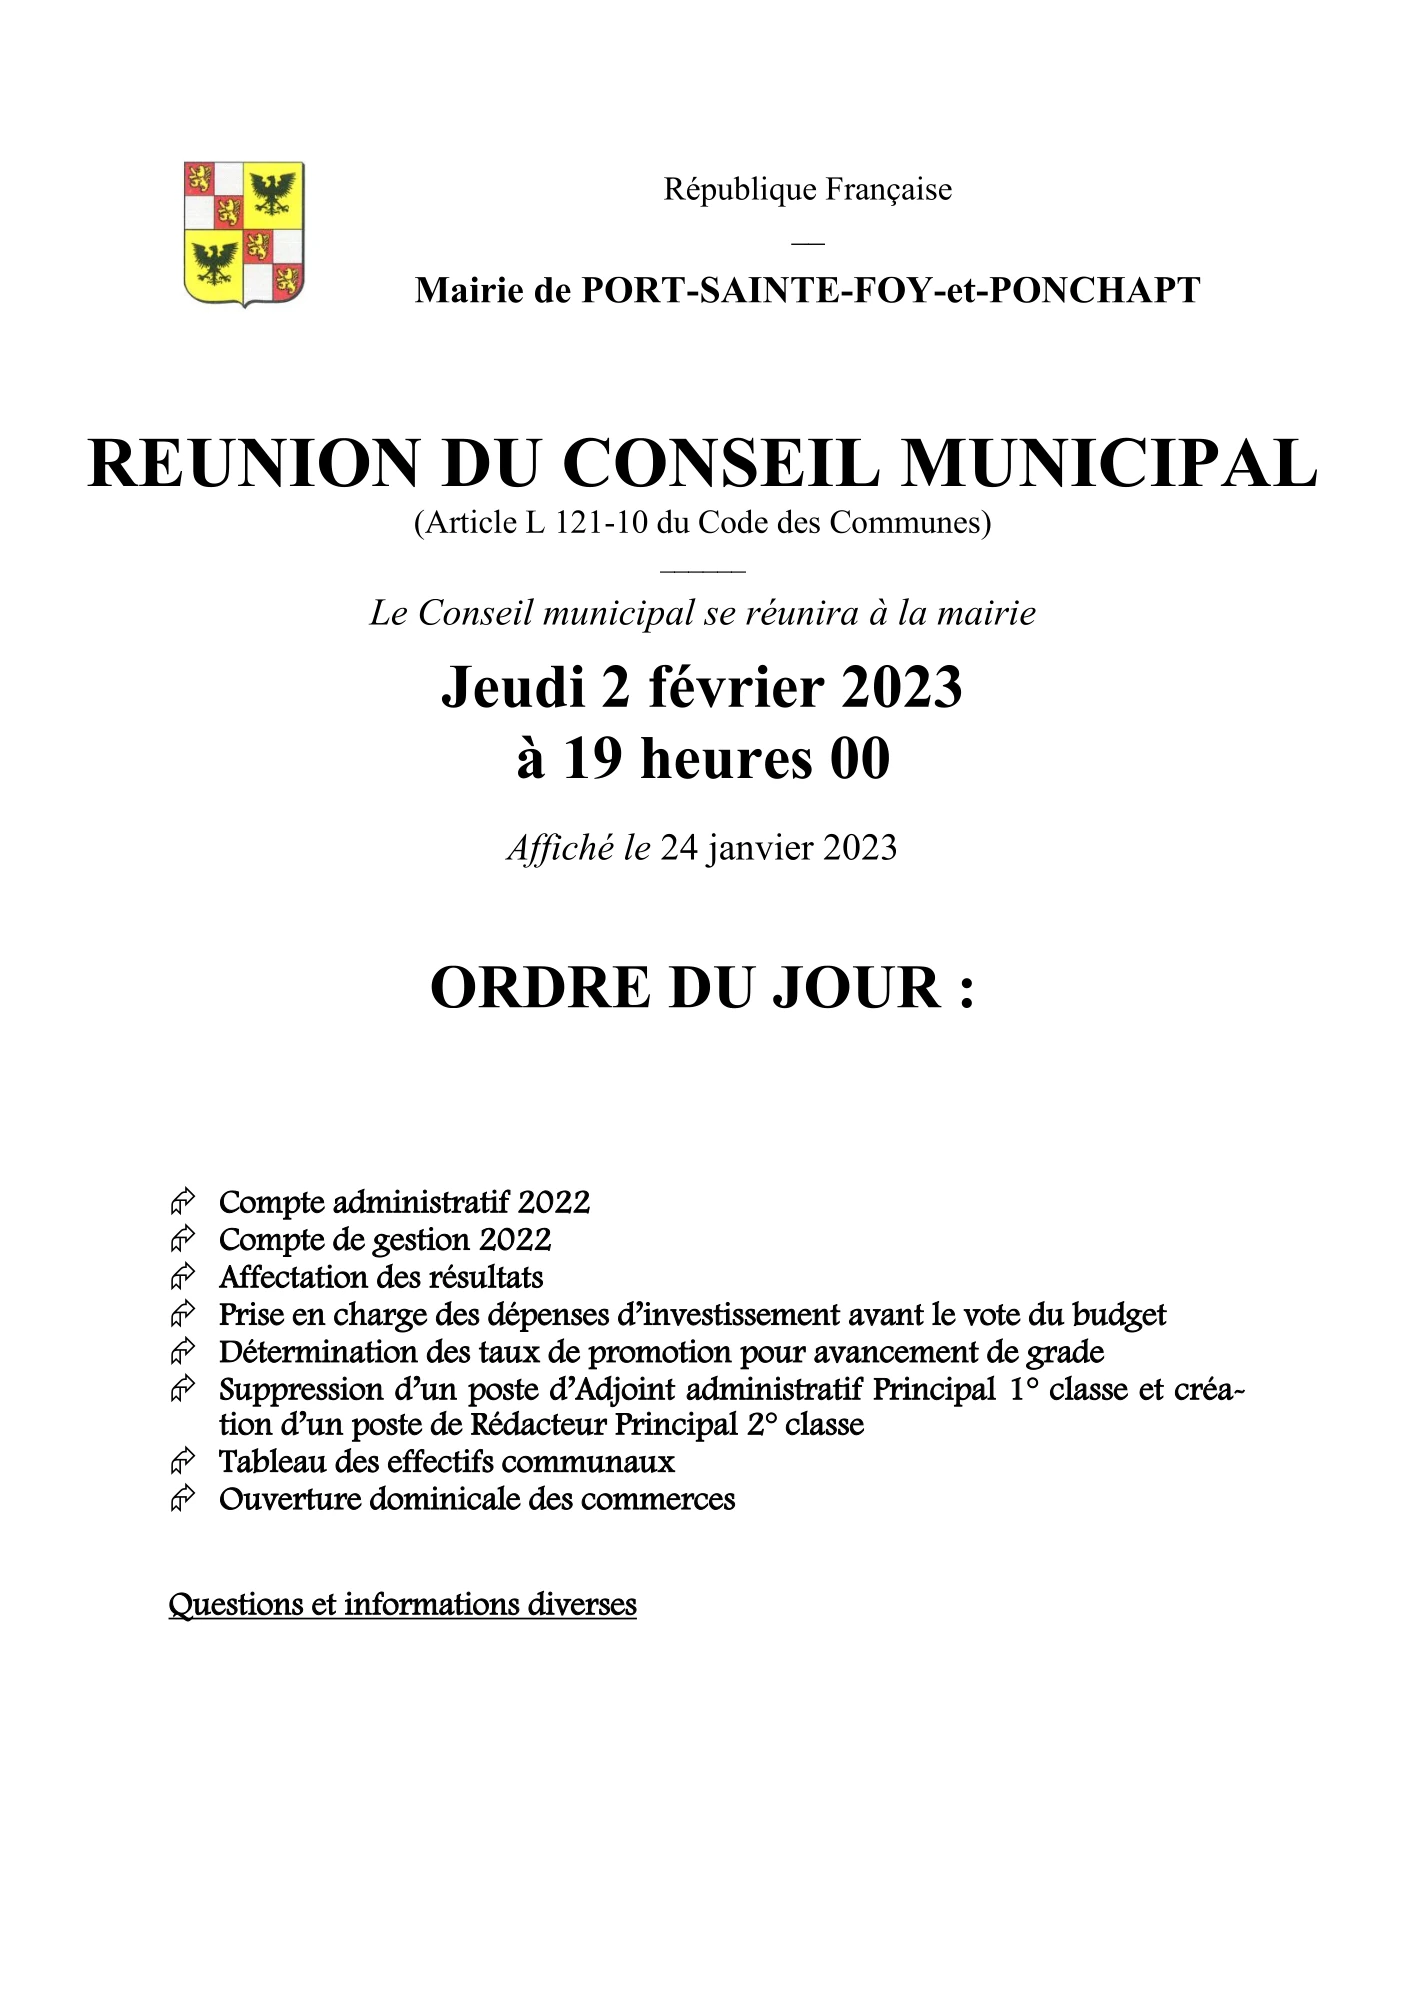 Ordre du jour du Conseil Municipal du 2 février 2023